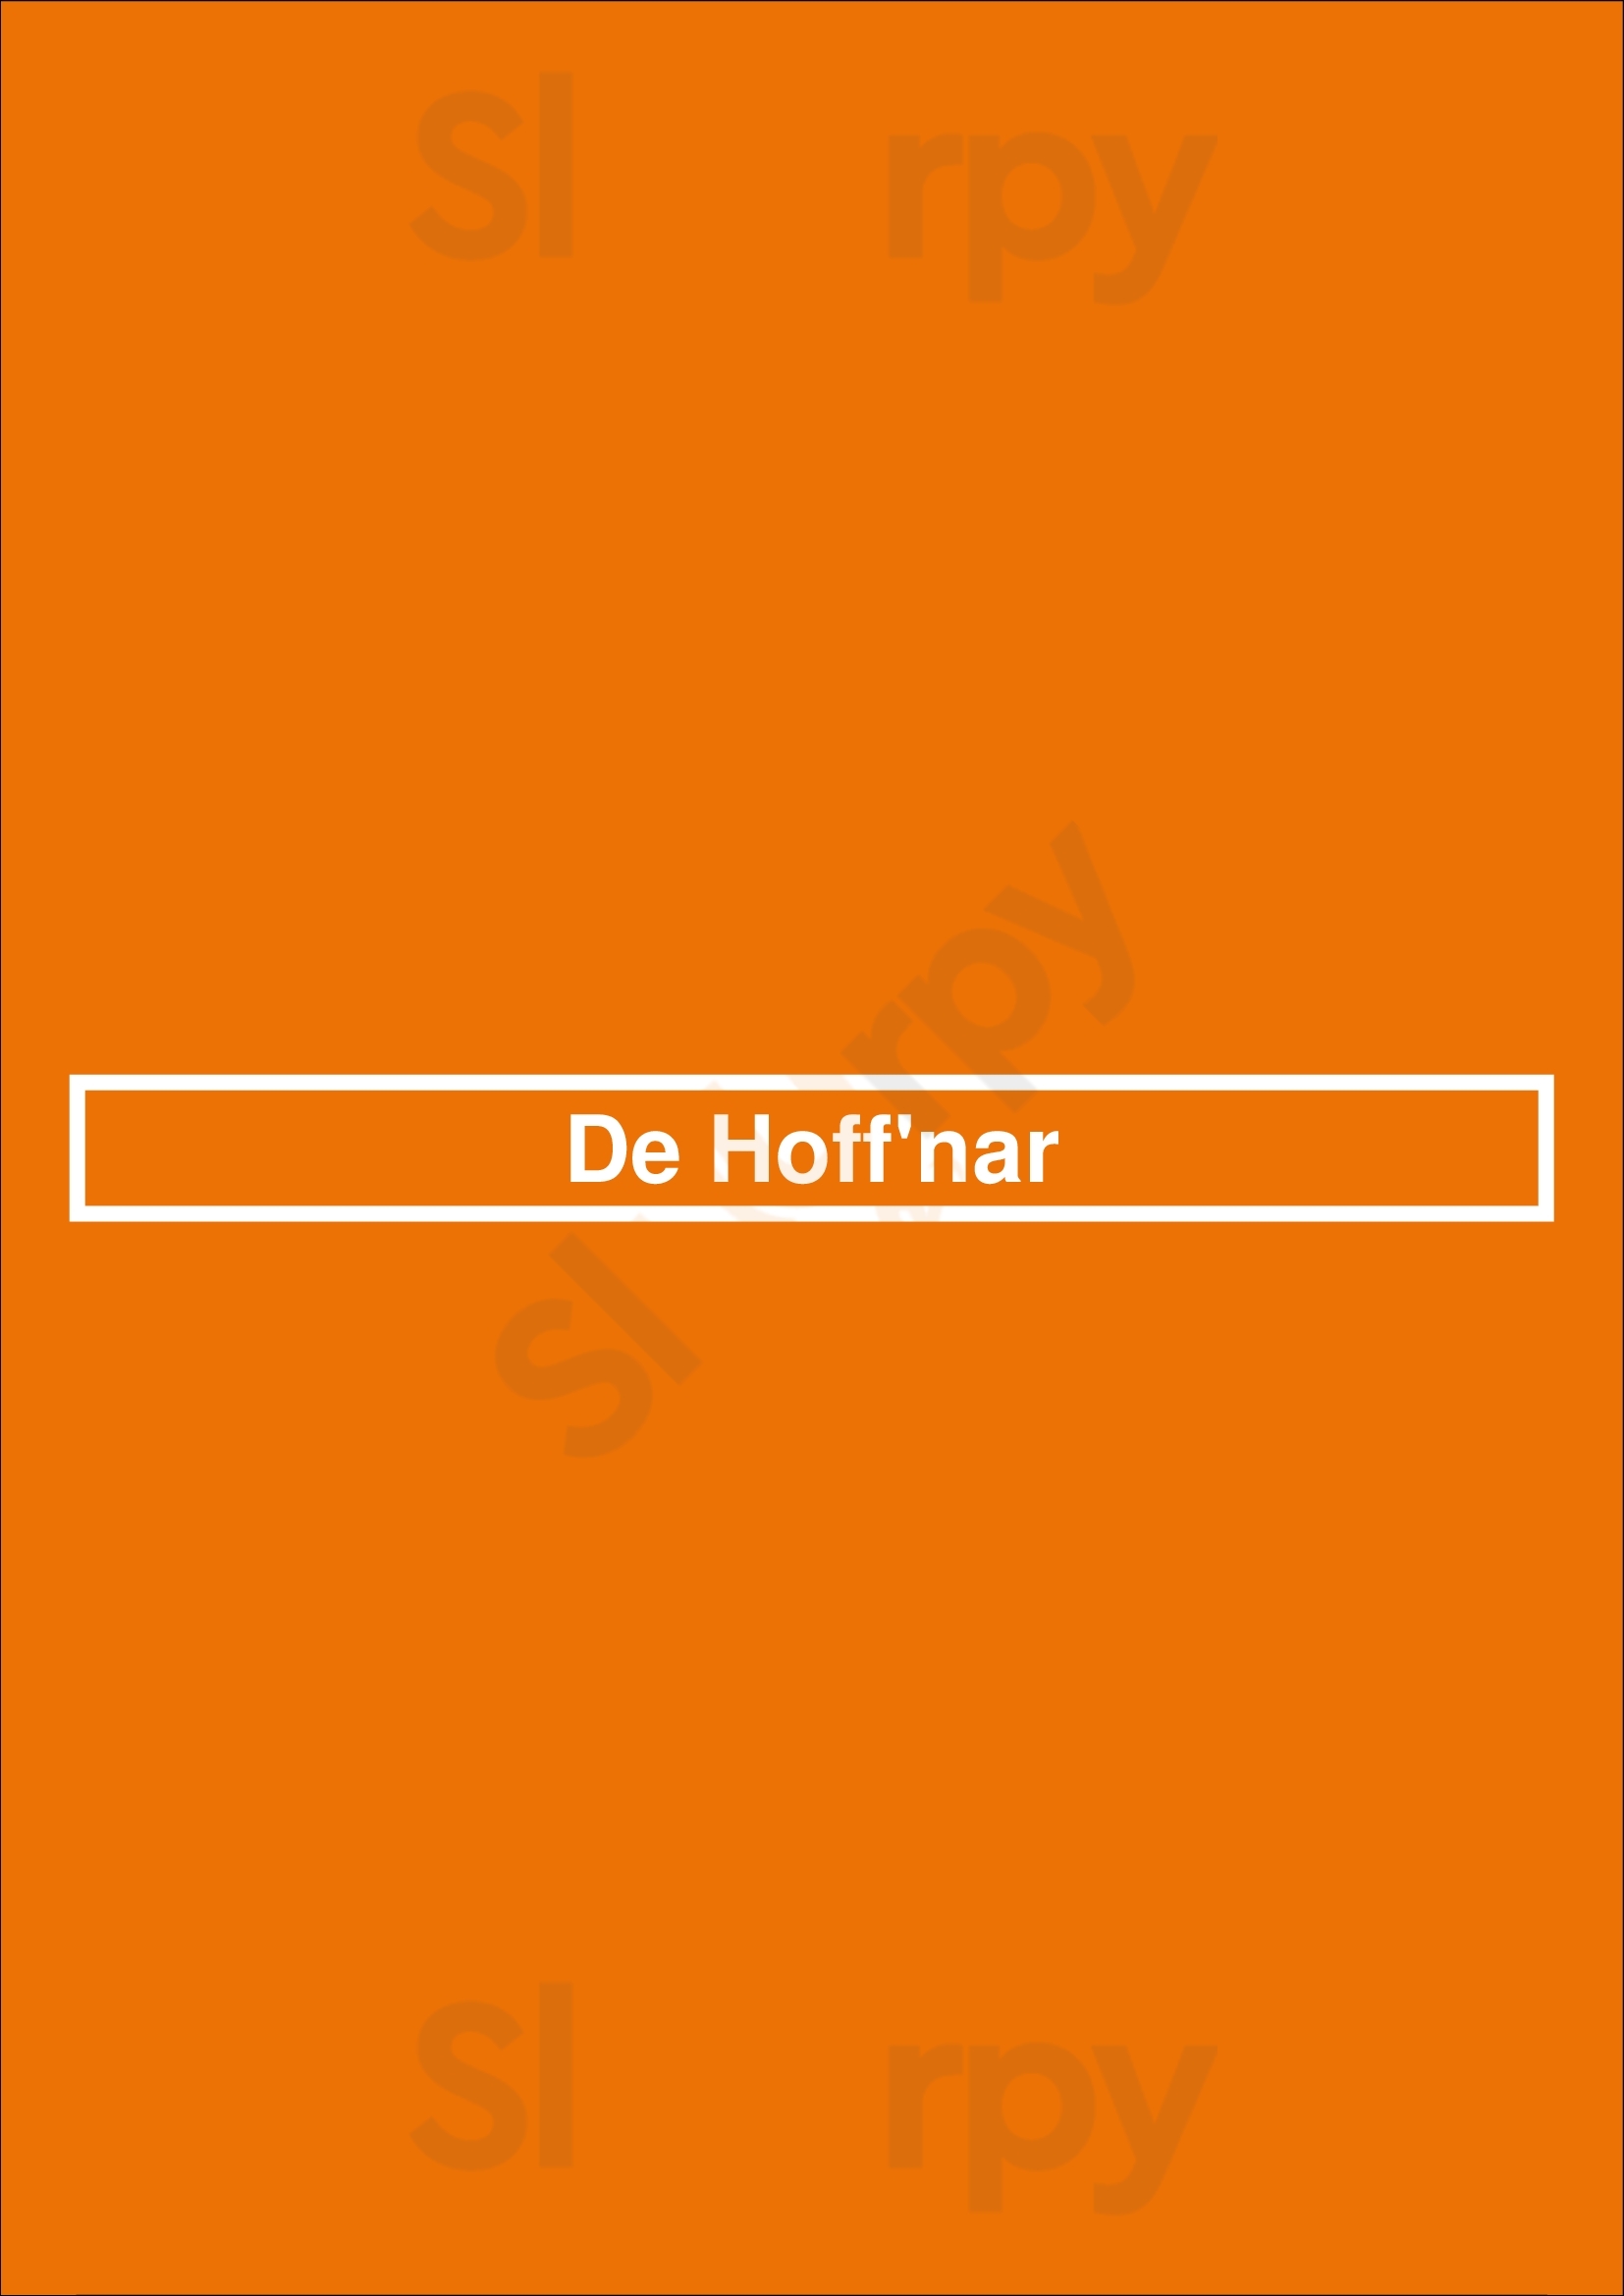 De Hoff'nar Dordrecht Menu - 1